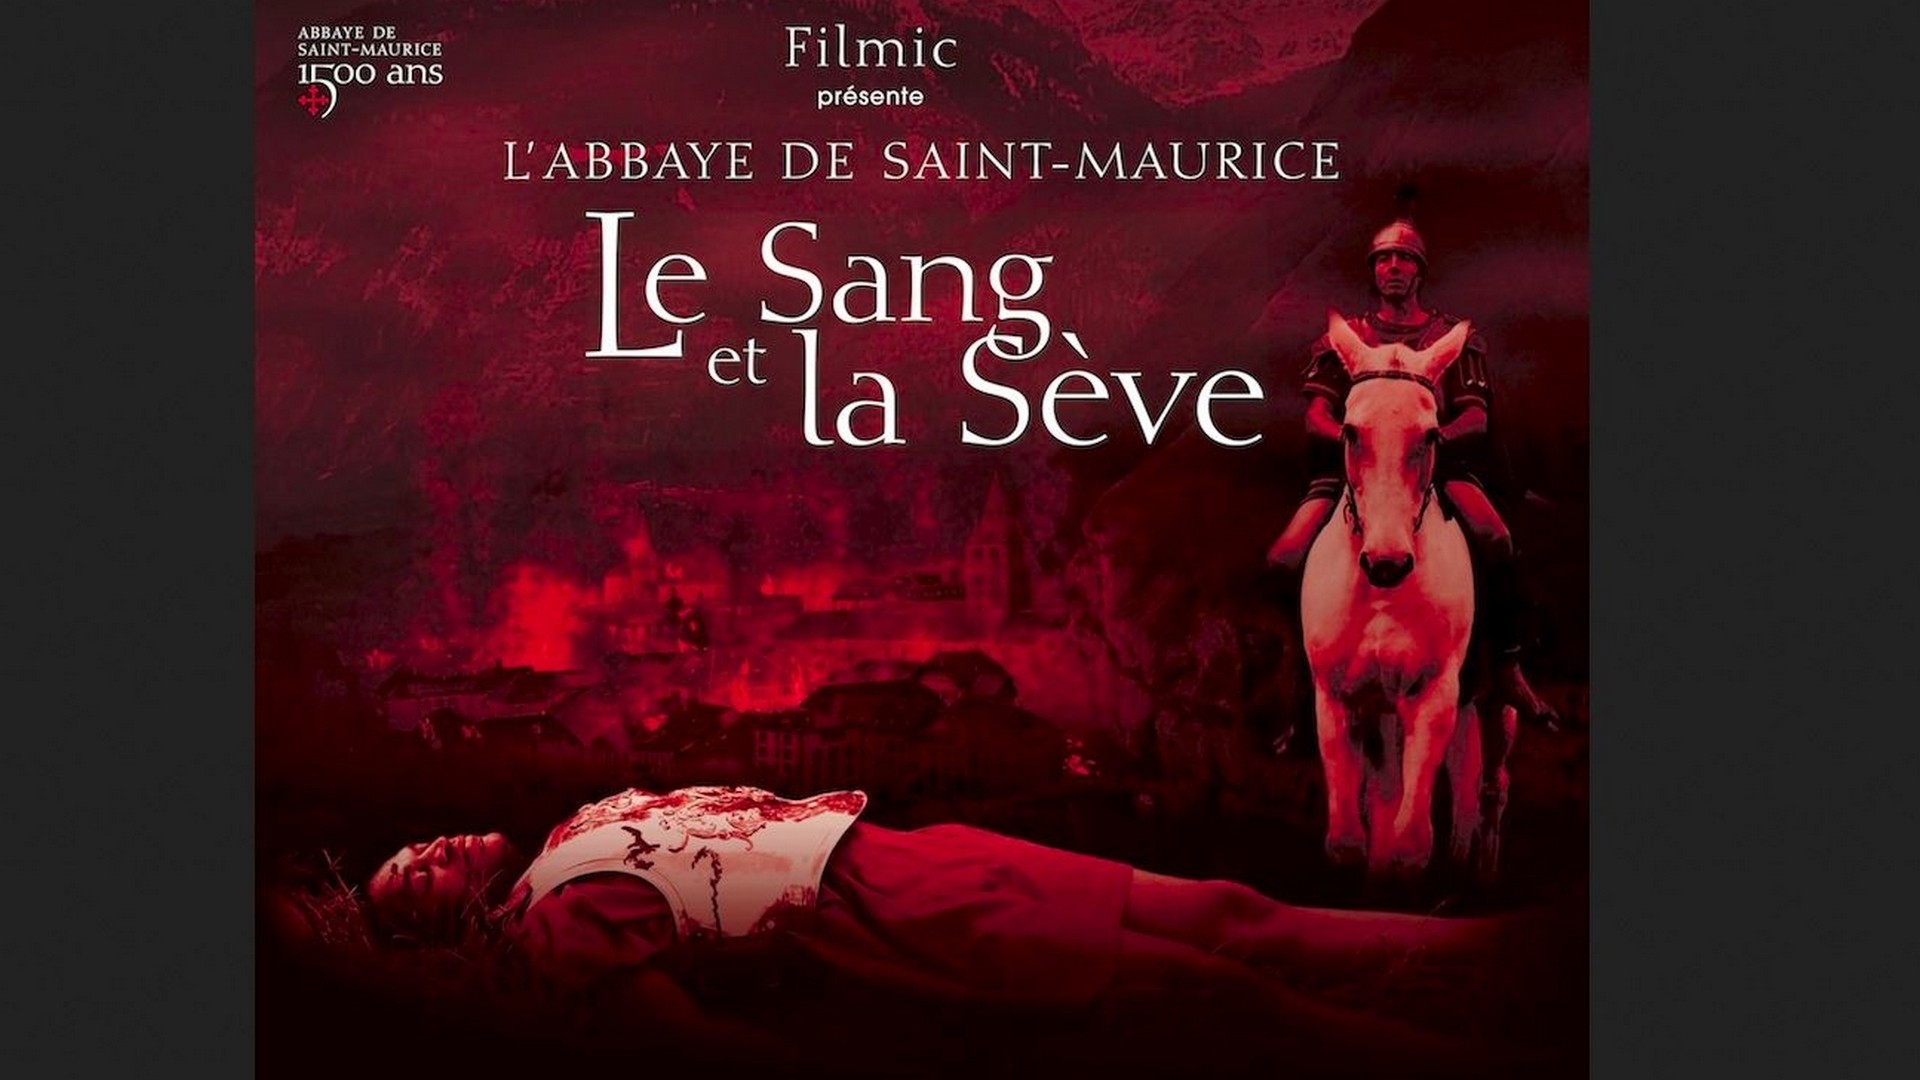 Le Sang et la Sève, long métrage documentaire de Christian Berrut sur l'histoire de l'Abbaye de Saint-Maurice (affiche du film) 